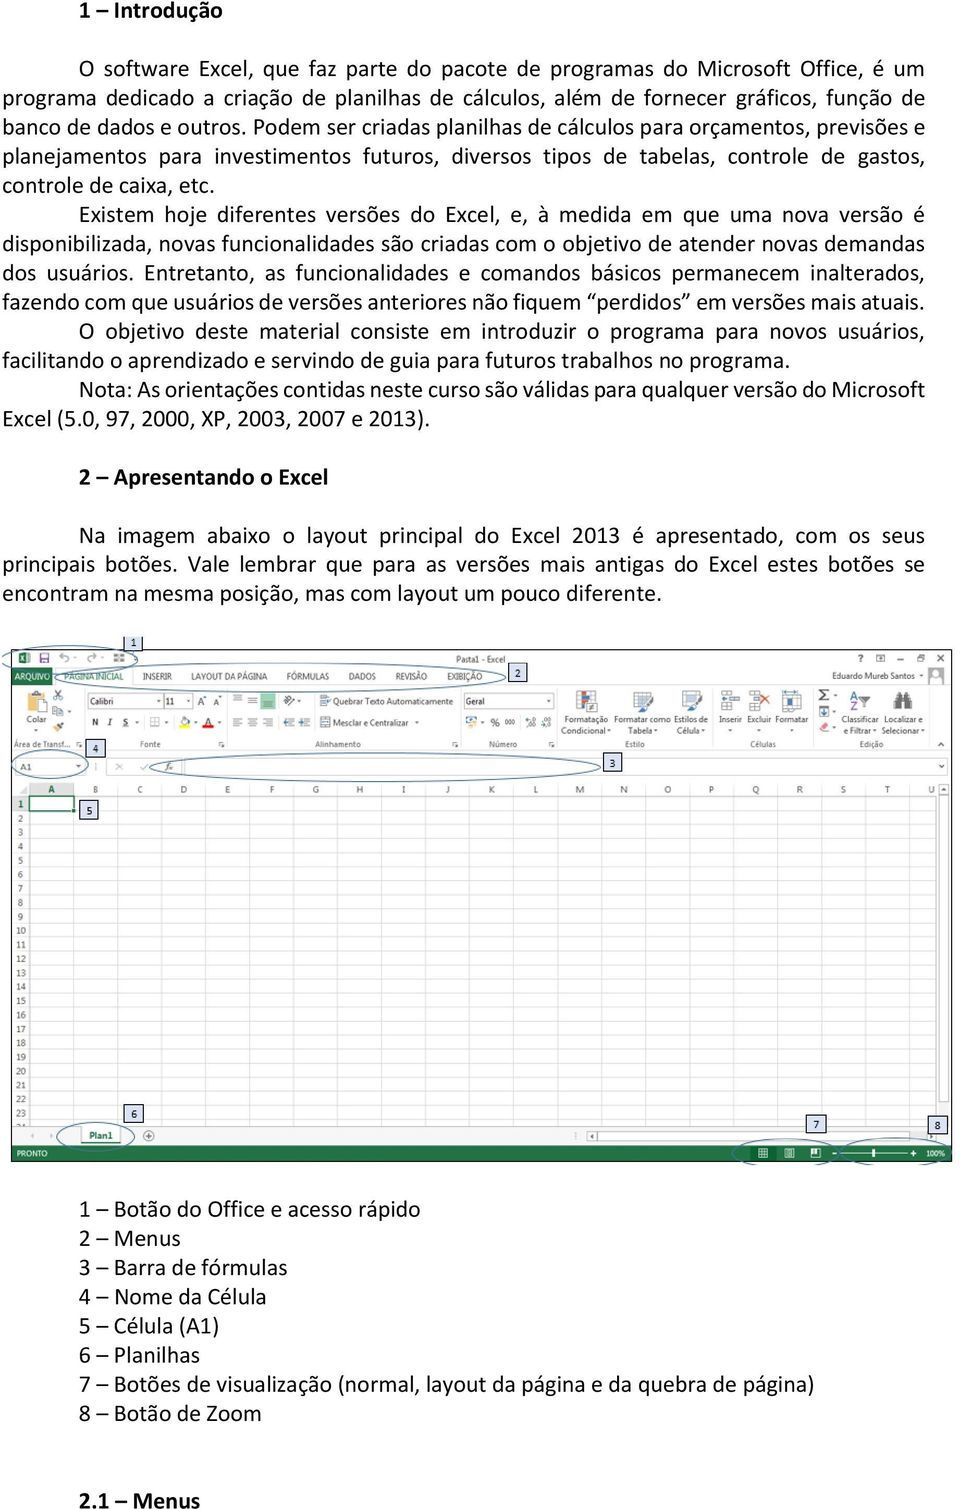 Existem hoje diferentes versões do Excel, e, à medida em que uma nova versão é disponibilizada, novas funcionalidades são criadas com o objetivo de atender novas demandas dos usuários.